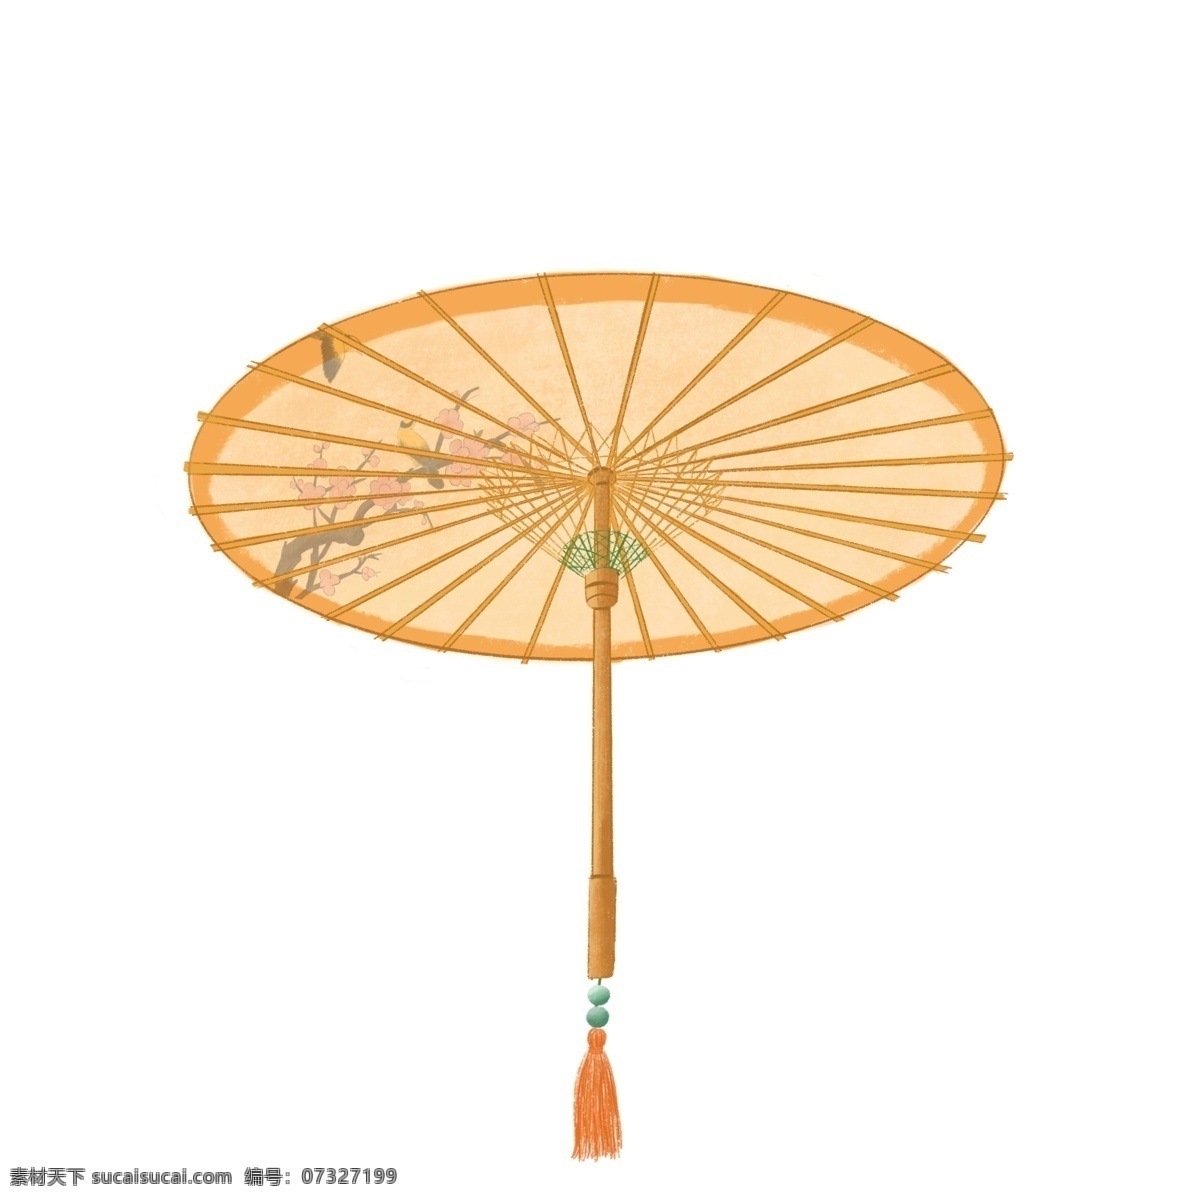 中国 油纸伞 中国画 古典 折伞 东方 流苏 花纹 下雨 雨天 雨季 传统 工艺 手作 淑女 风雅 江南